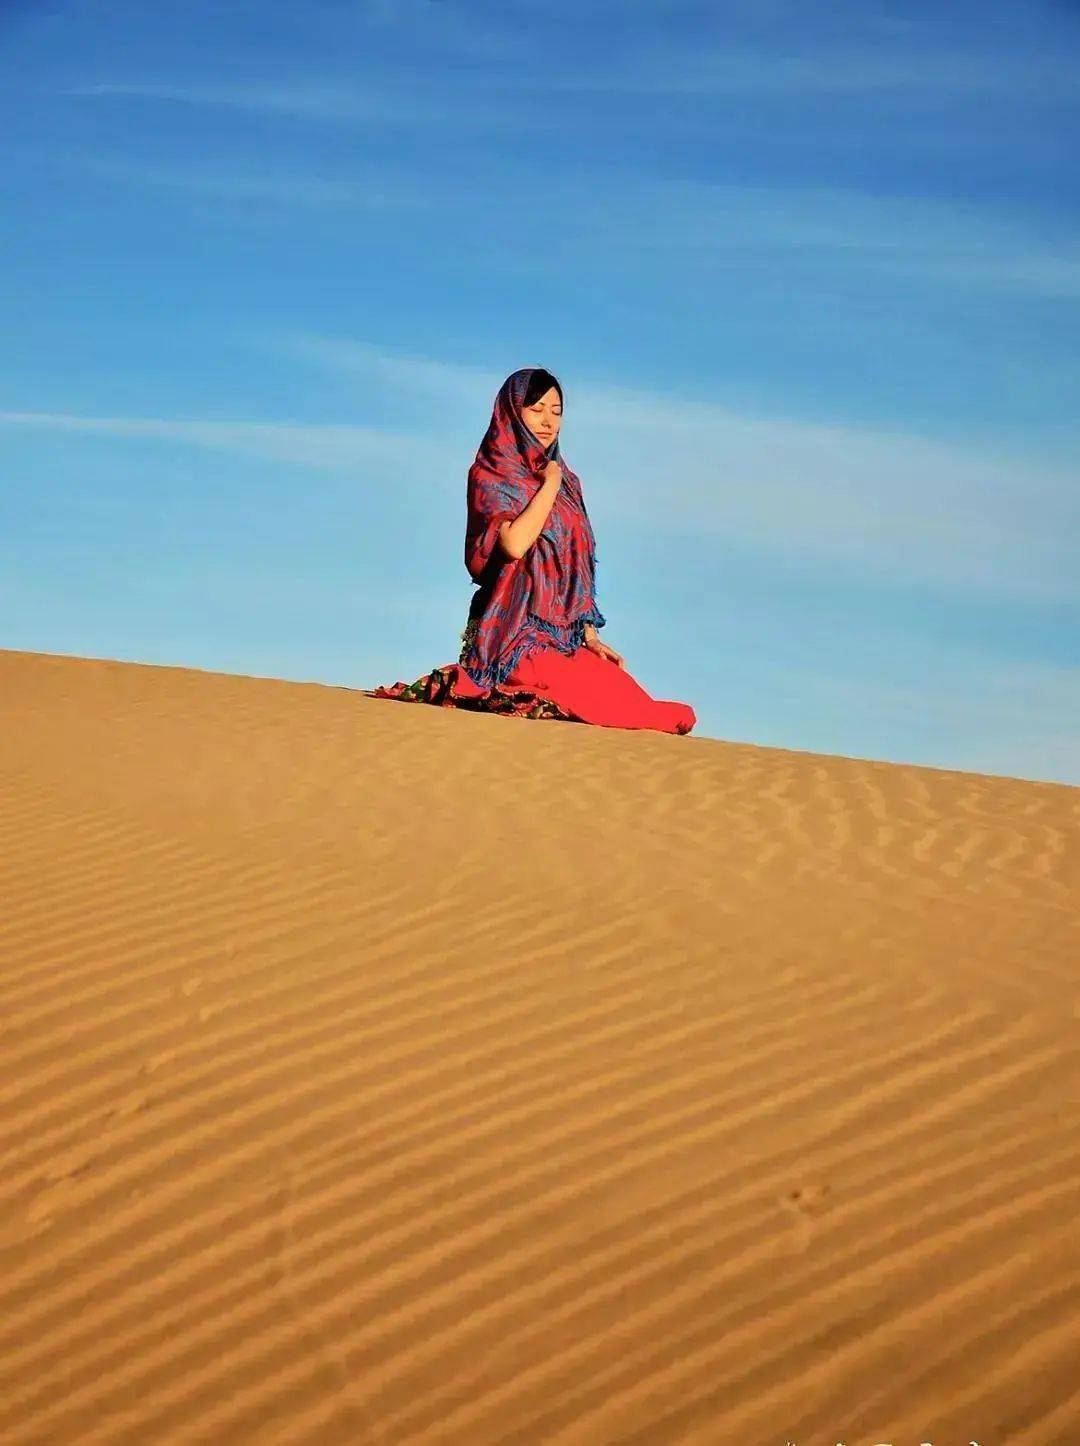 jusino摄影课堂:如何拍出高逼格的沙漠照!